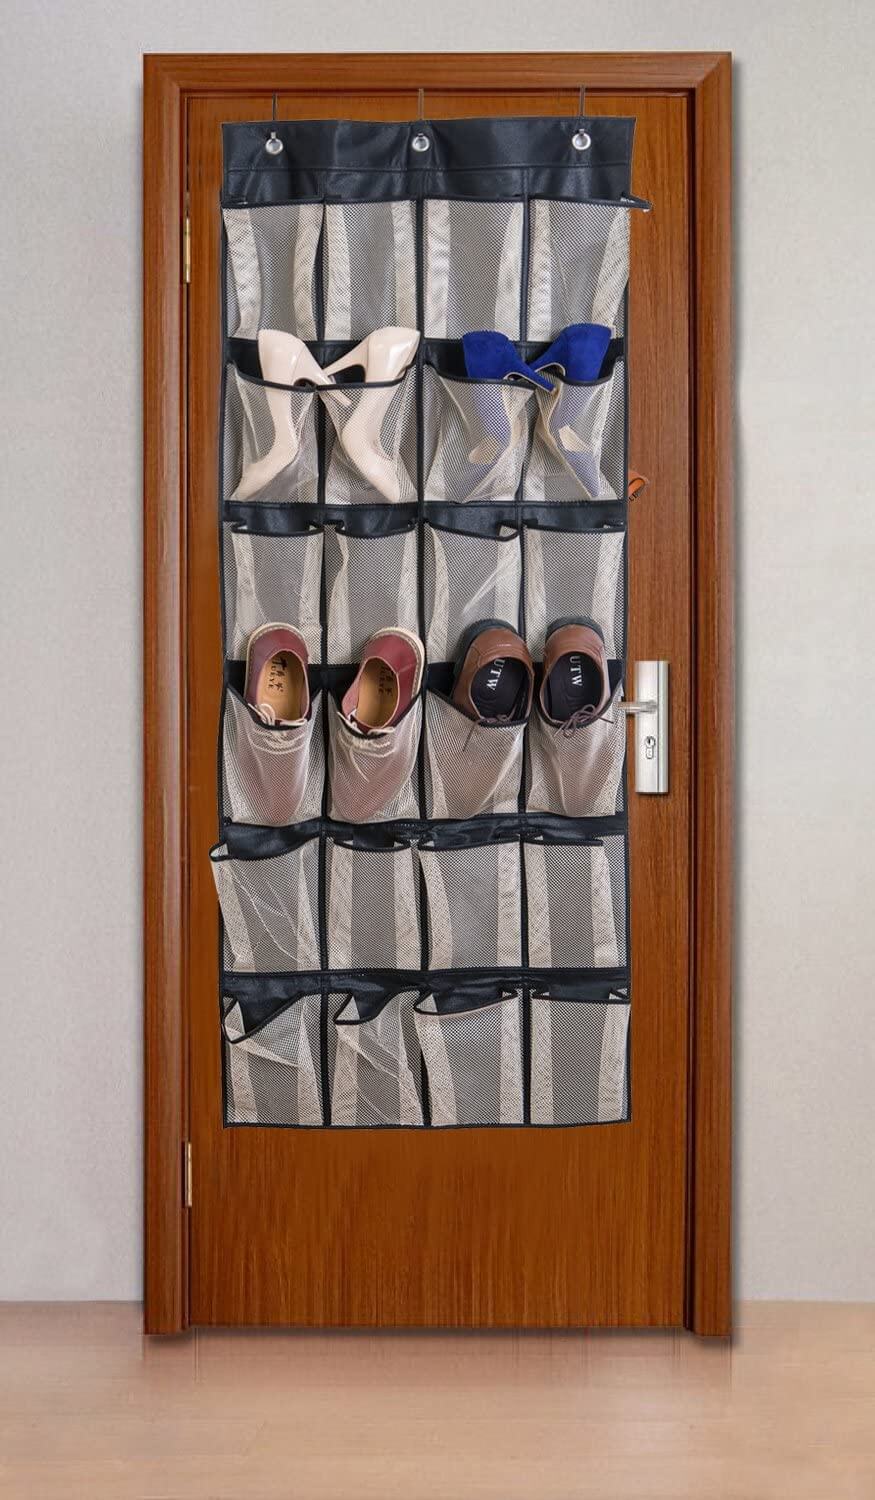 Hanging Door Organizer With 24 Pockets #shoeorganizer #storage #shoe #organizer #decorhomeideas